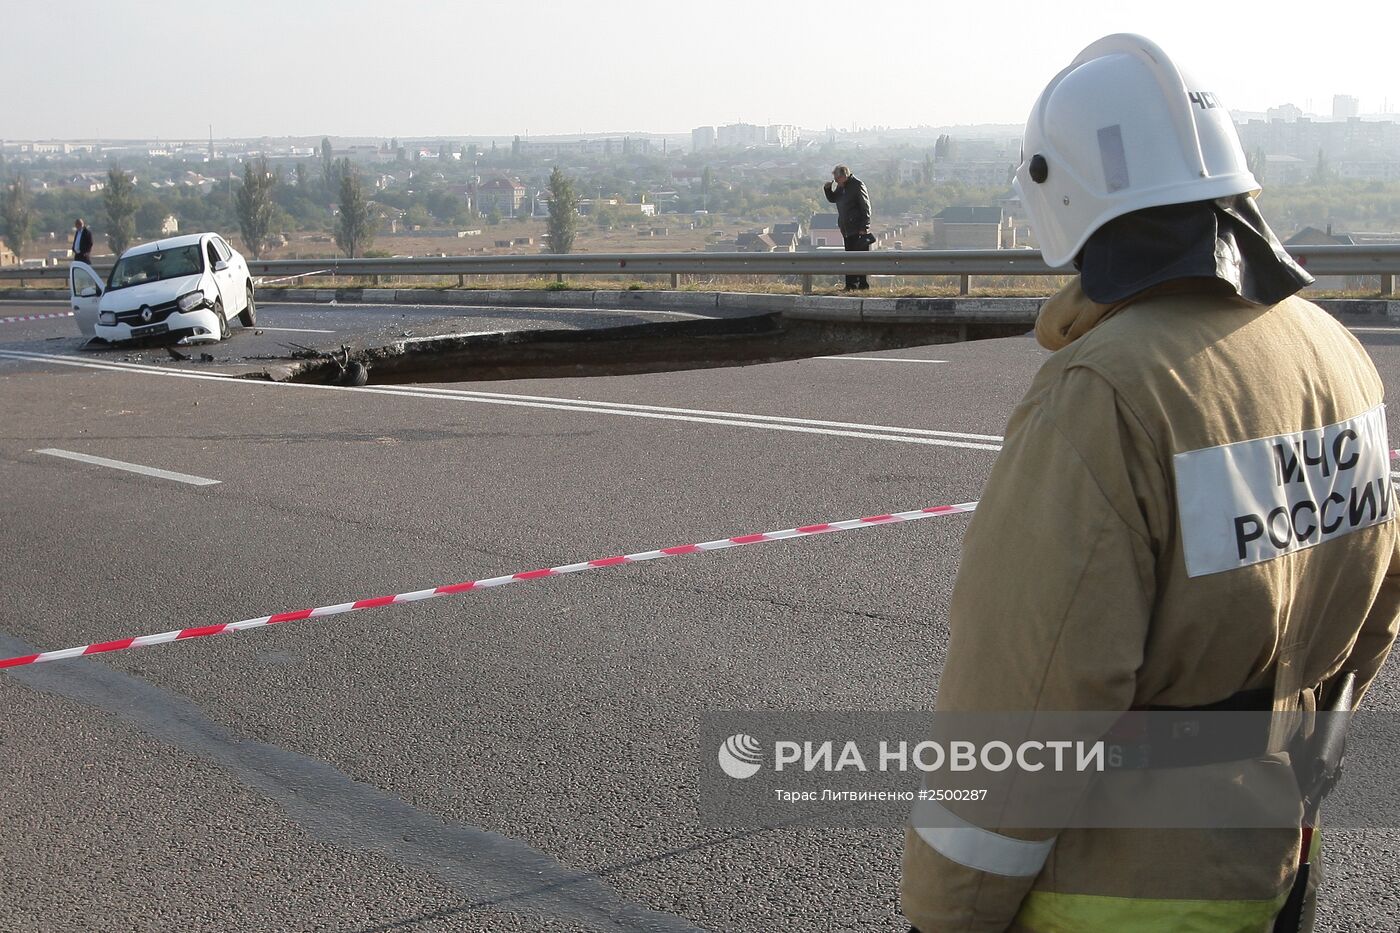 Обвал грунта на участке автотрассы в Крыму